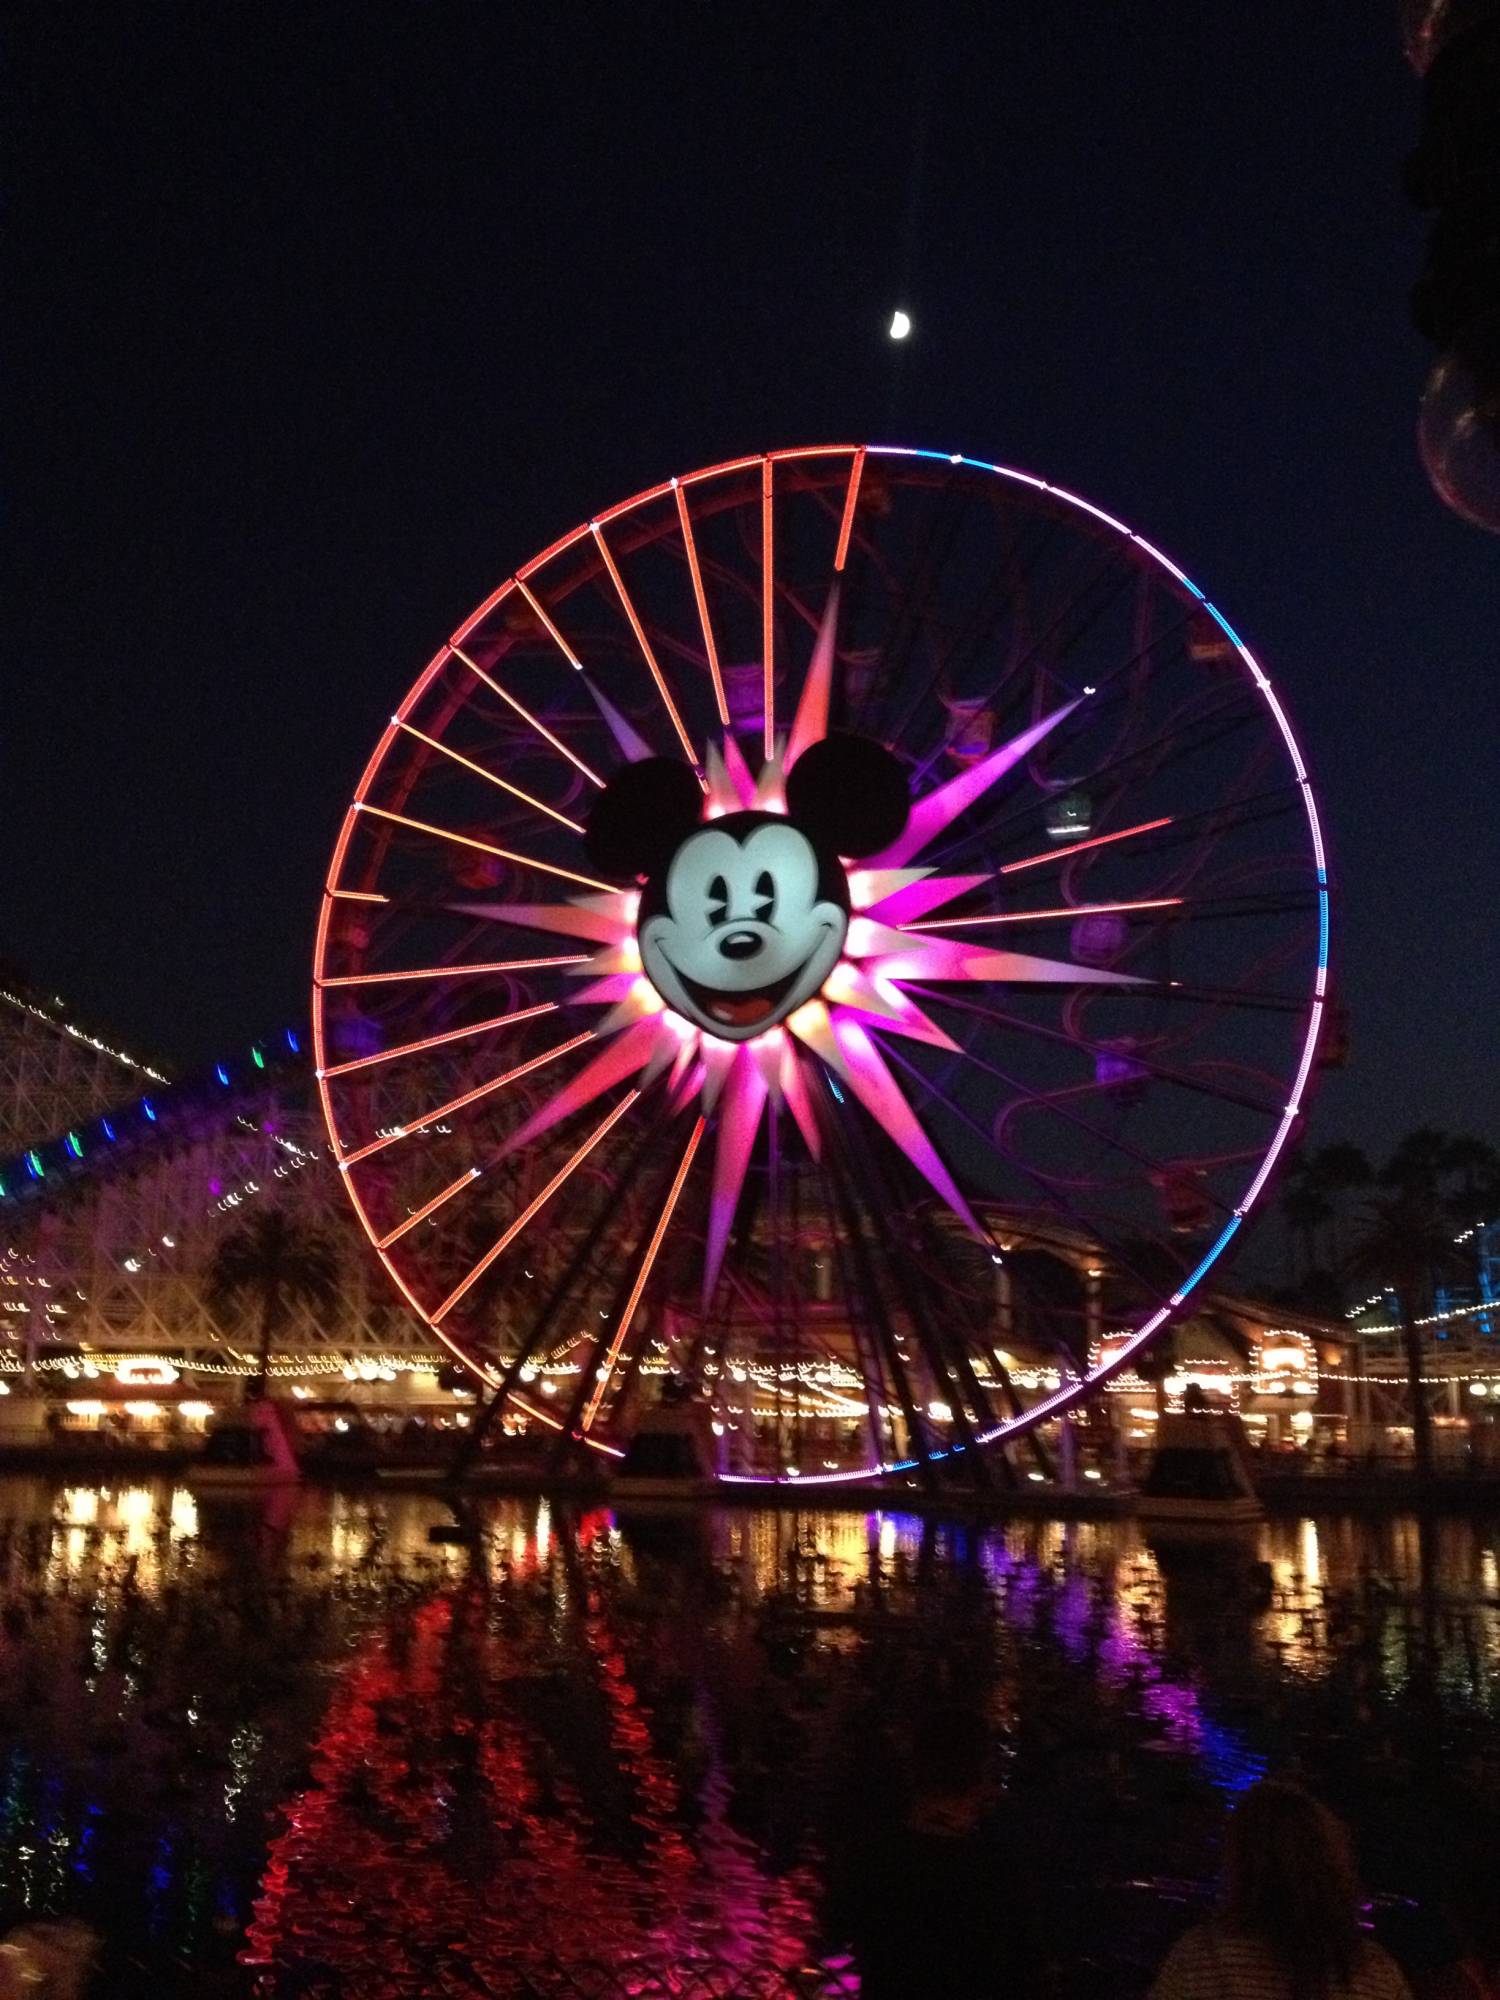 Mickey's Fun Wheel at Night